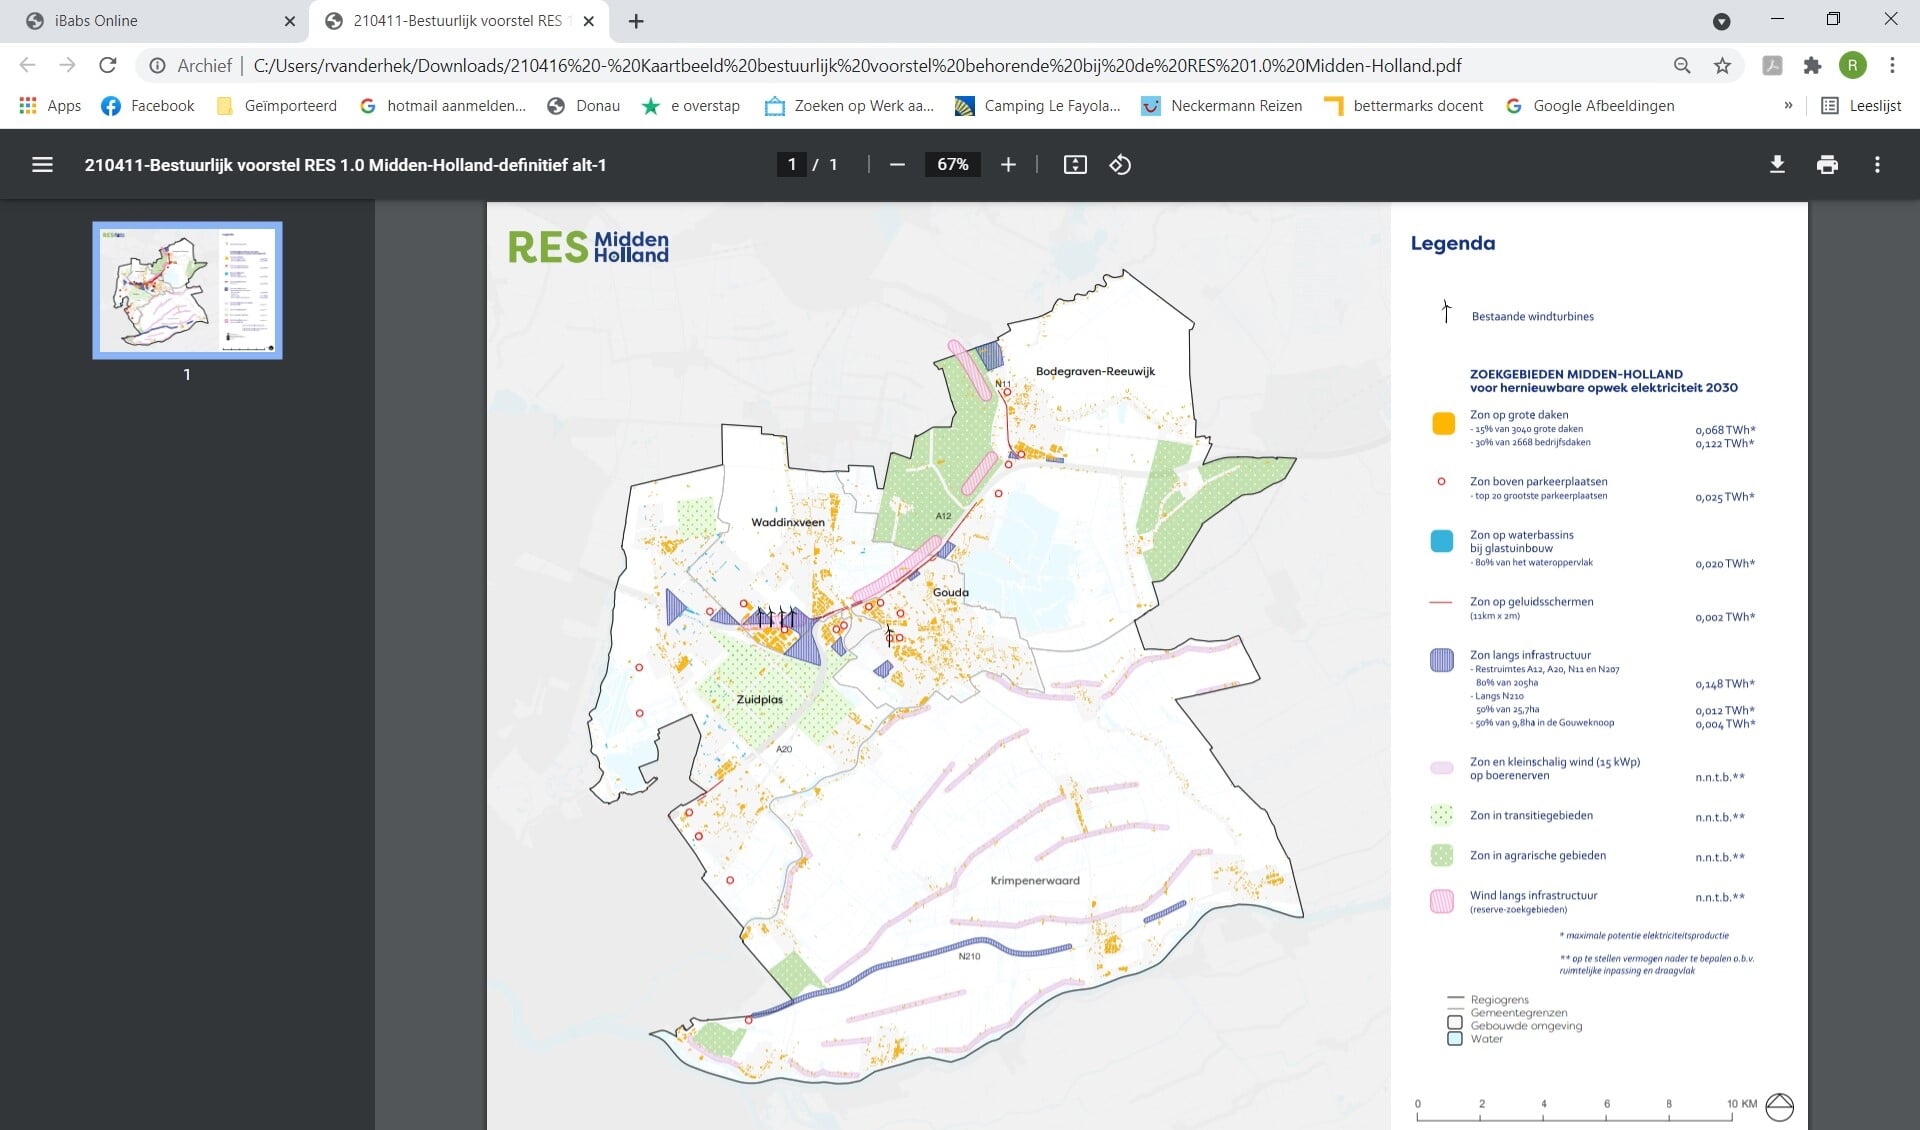 • Kaart met zoekgebieden voor duurzame energieprojecten in de regio Midden-Holland.